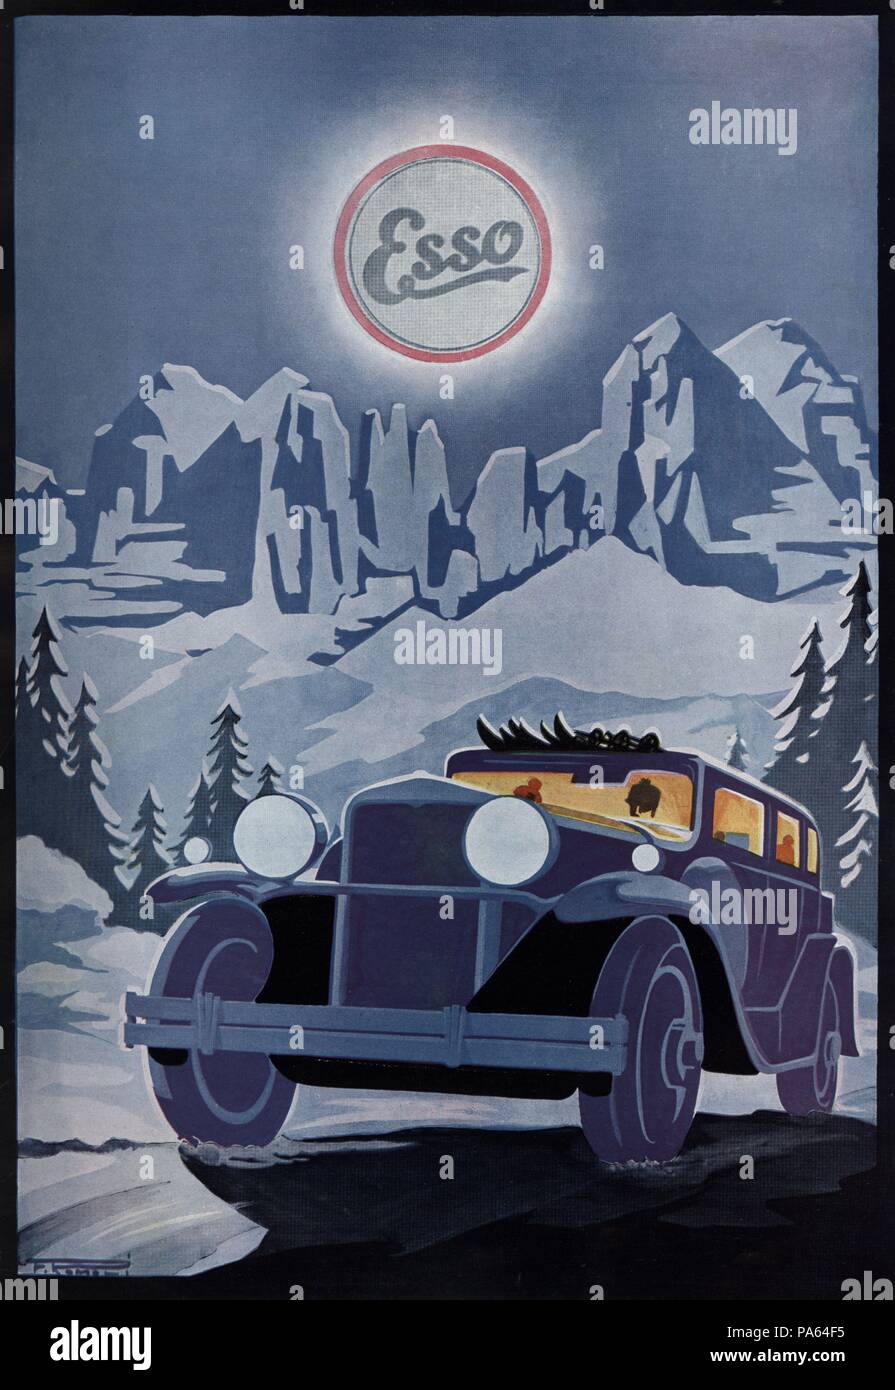 Publicidad de Aceites para de auto & motor Esso. Año 1929. Stockfoto